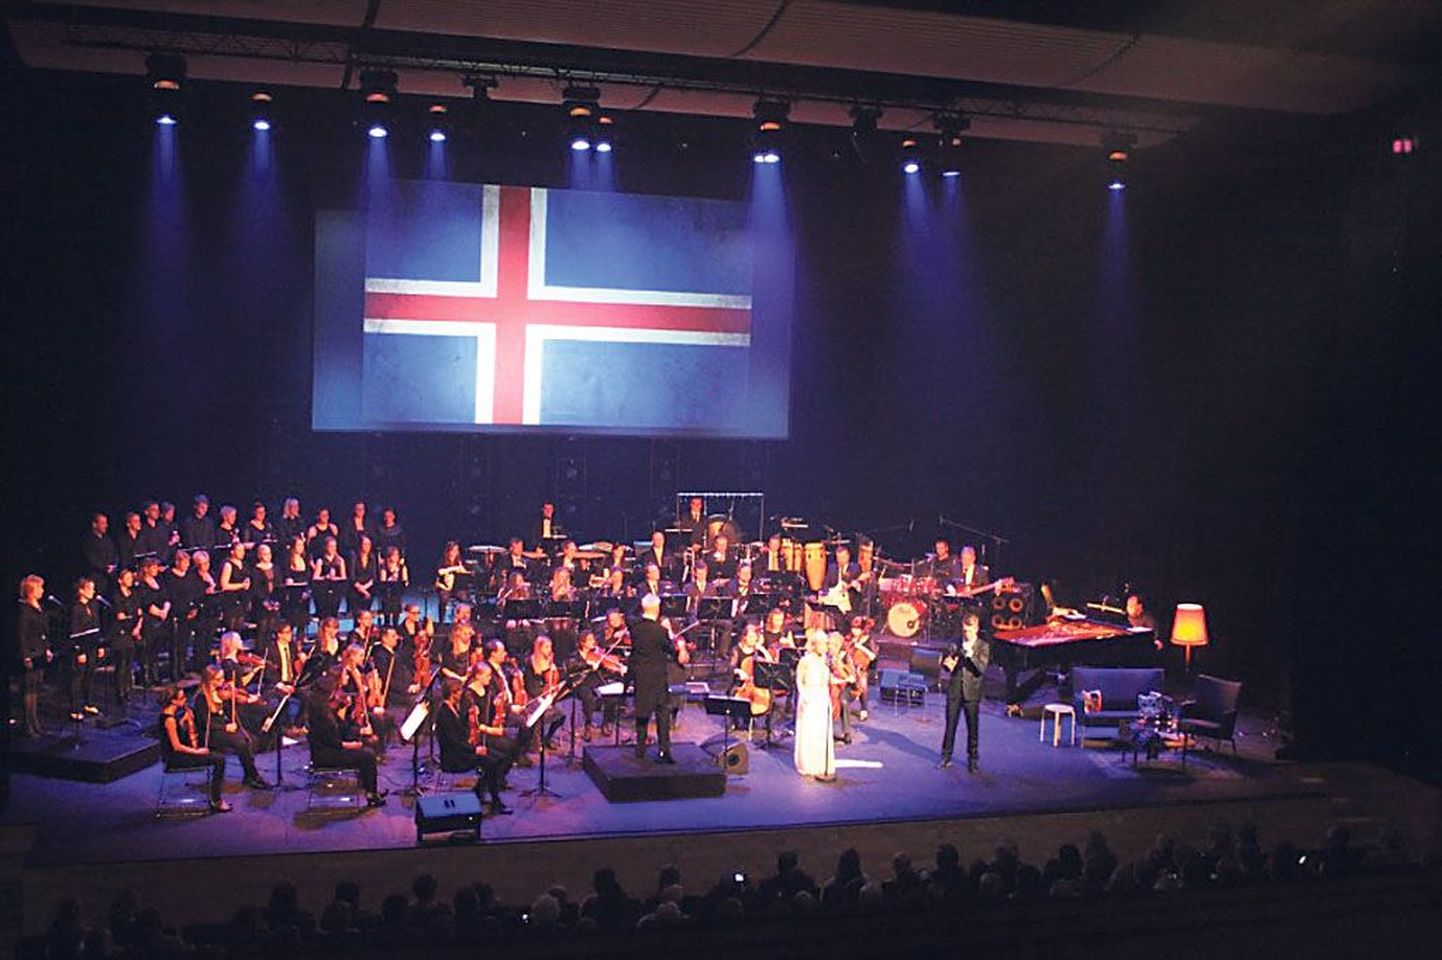 Islandil Akureyris toimunud kontsert “”Eurovisiooni” minevik ja olevik” osutus ülimenukaks. Kontserdil kõlanud eurolaulude seaded tegi pärnakas Mati Põdra.